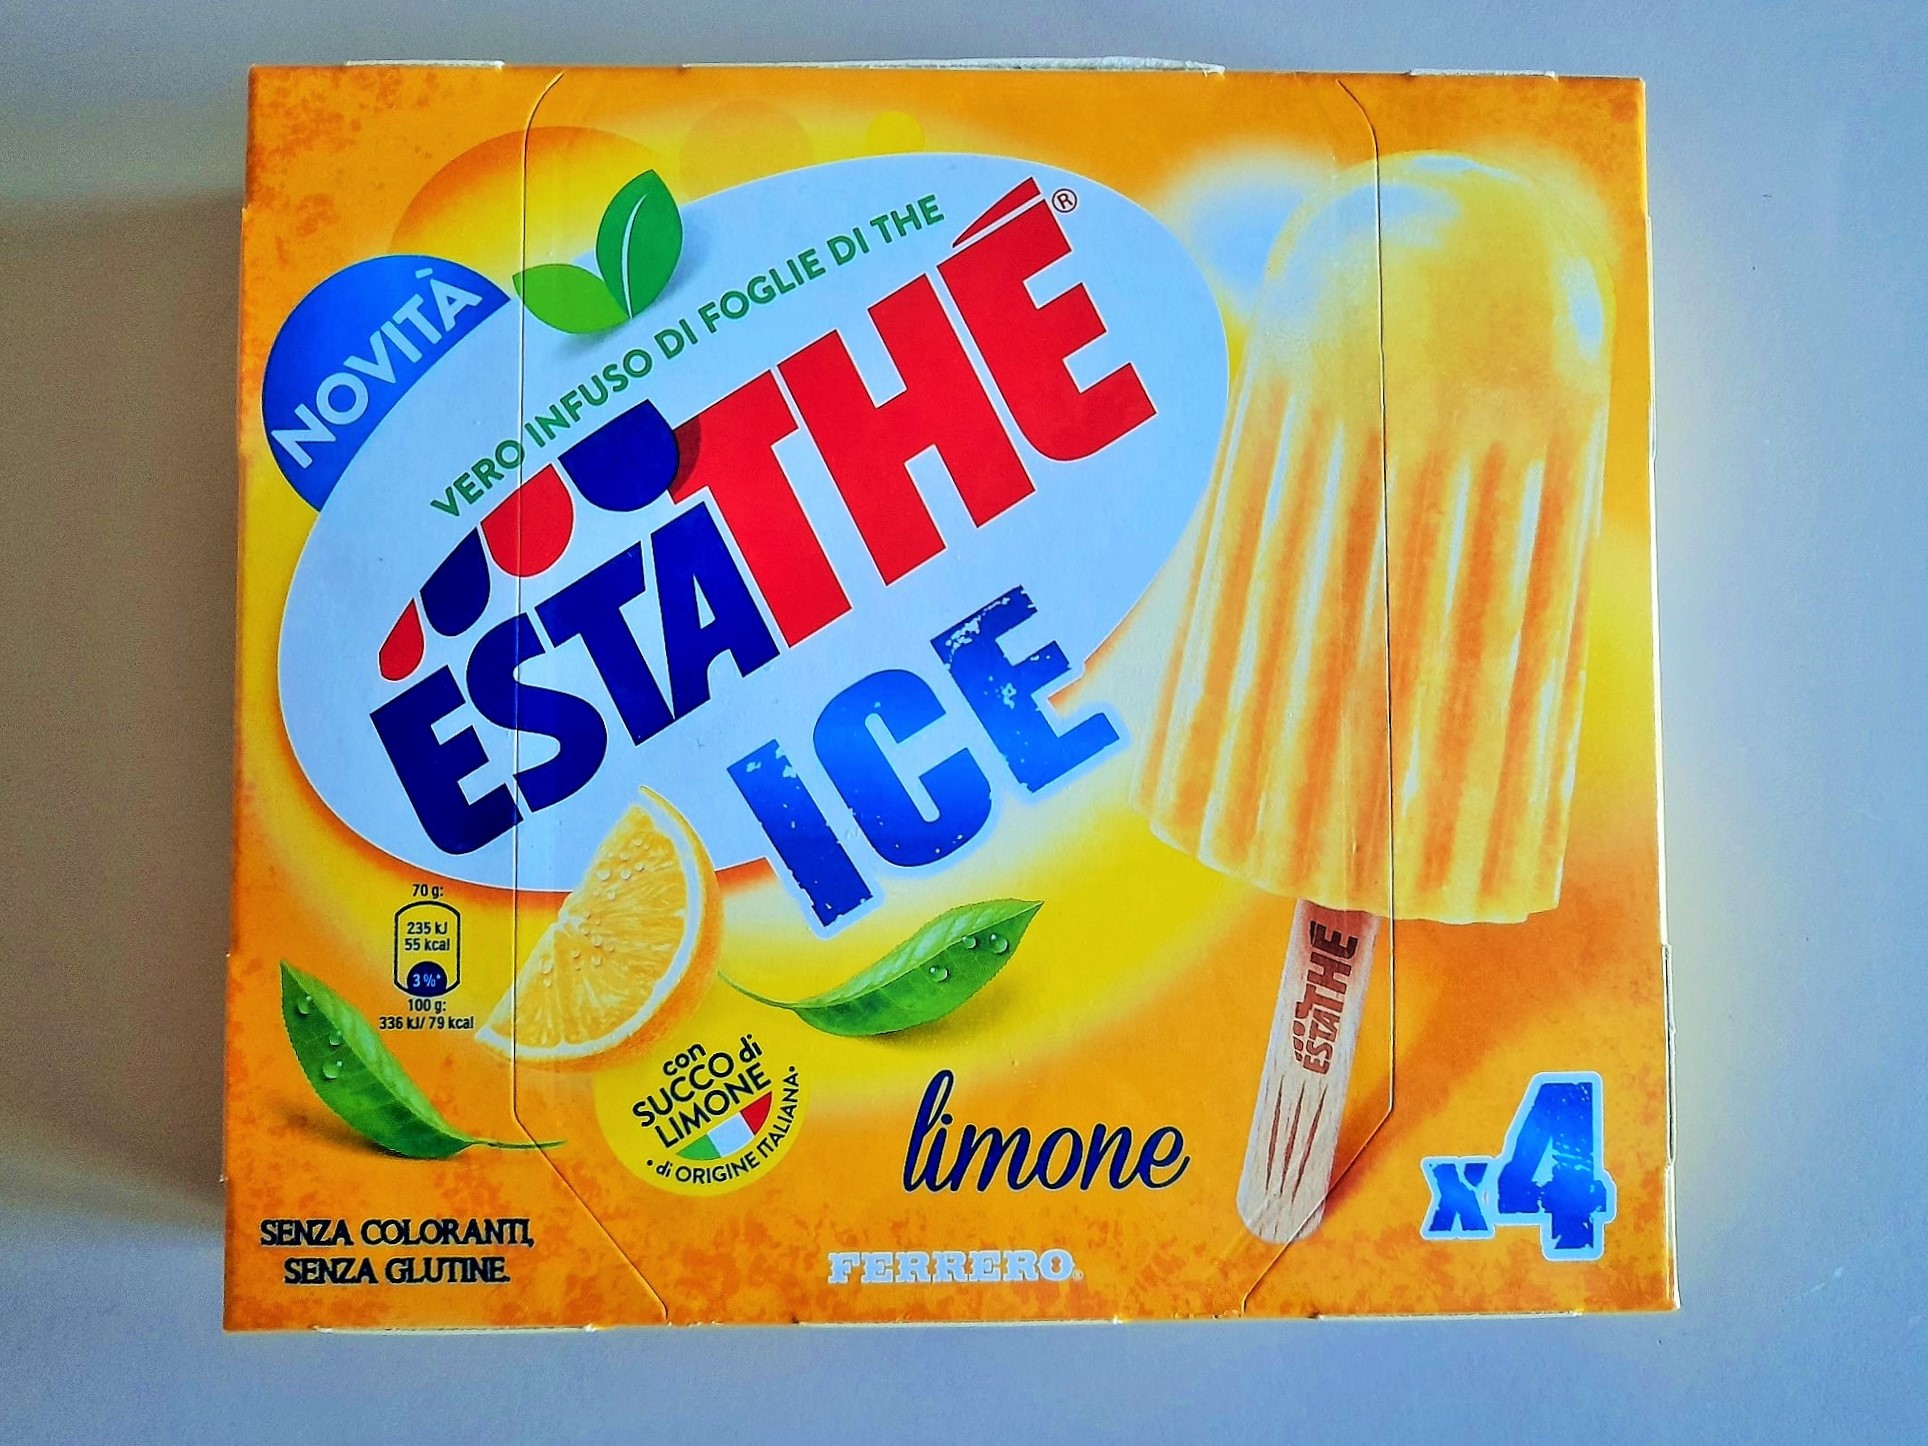 Estathé Ice al limone